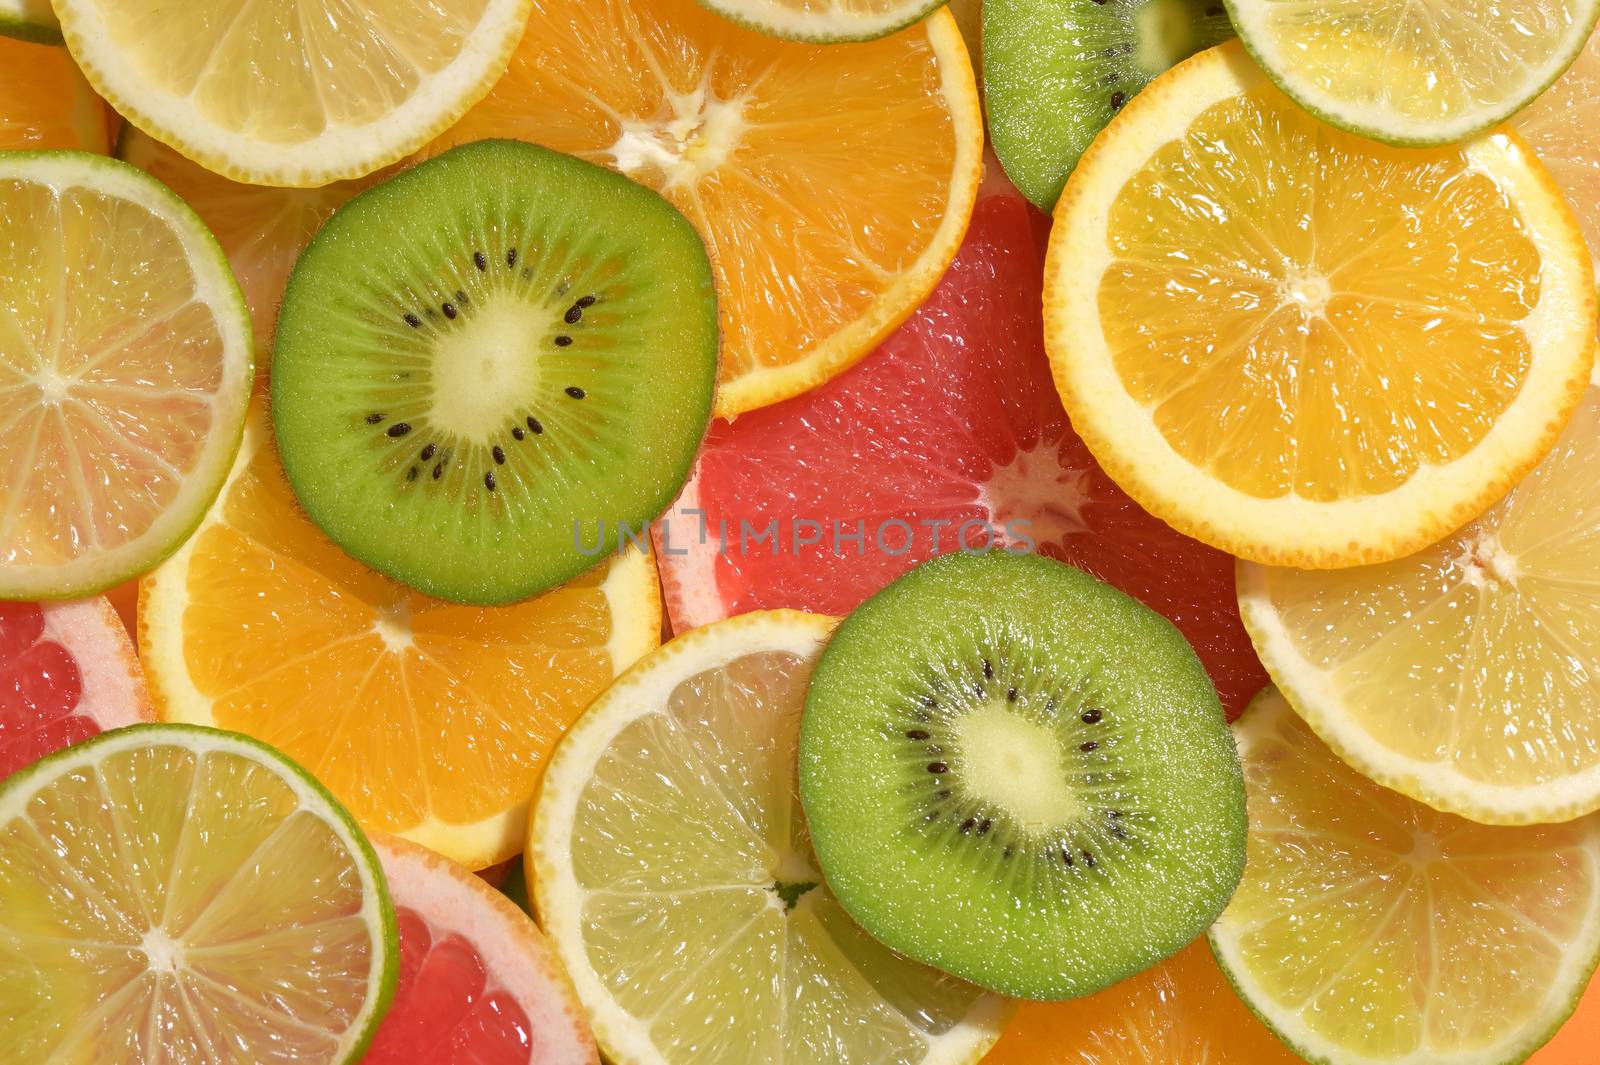 Fruit Slices Background With Lemon, Lime, Kiwi, Orange by jordachelr